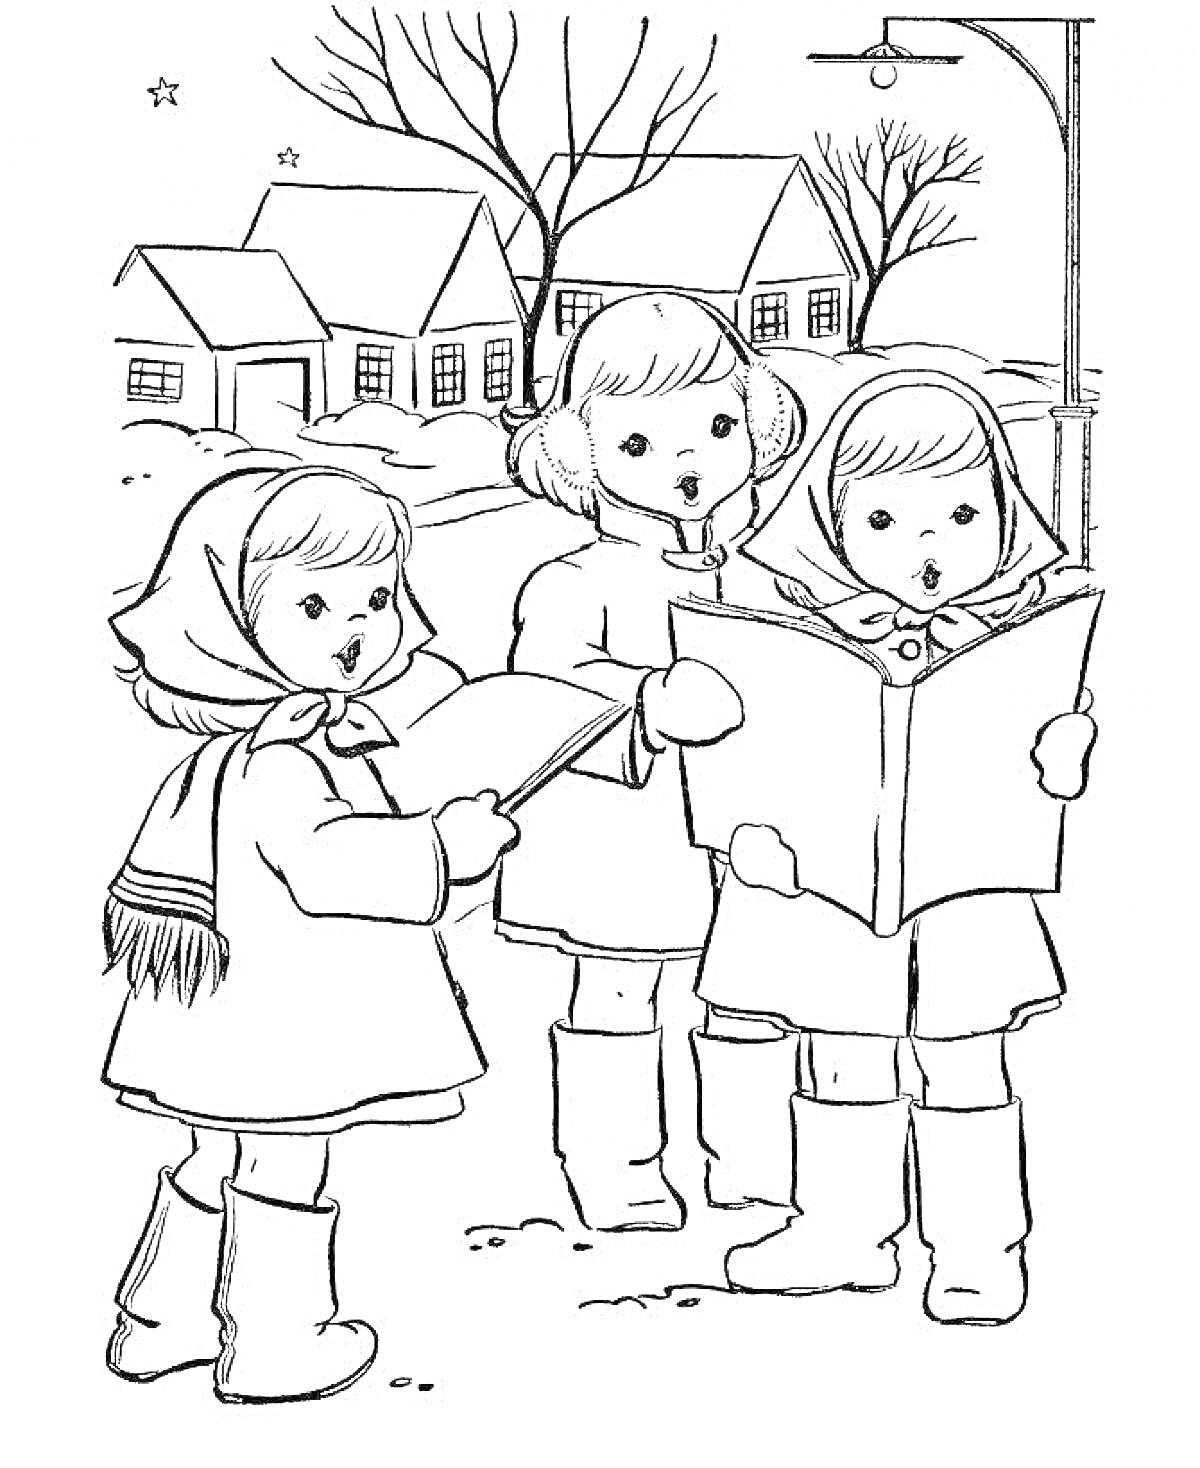 Дети поют колядки на улице, три ребенка в зимней одежде с шарфами и шапками, держащие ноты, дома на заднем плане, заснеженные деревья и уличный фонарь